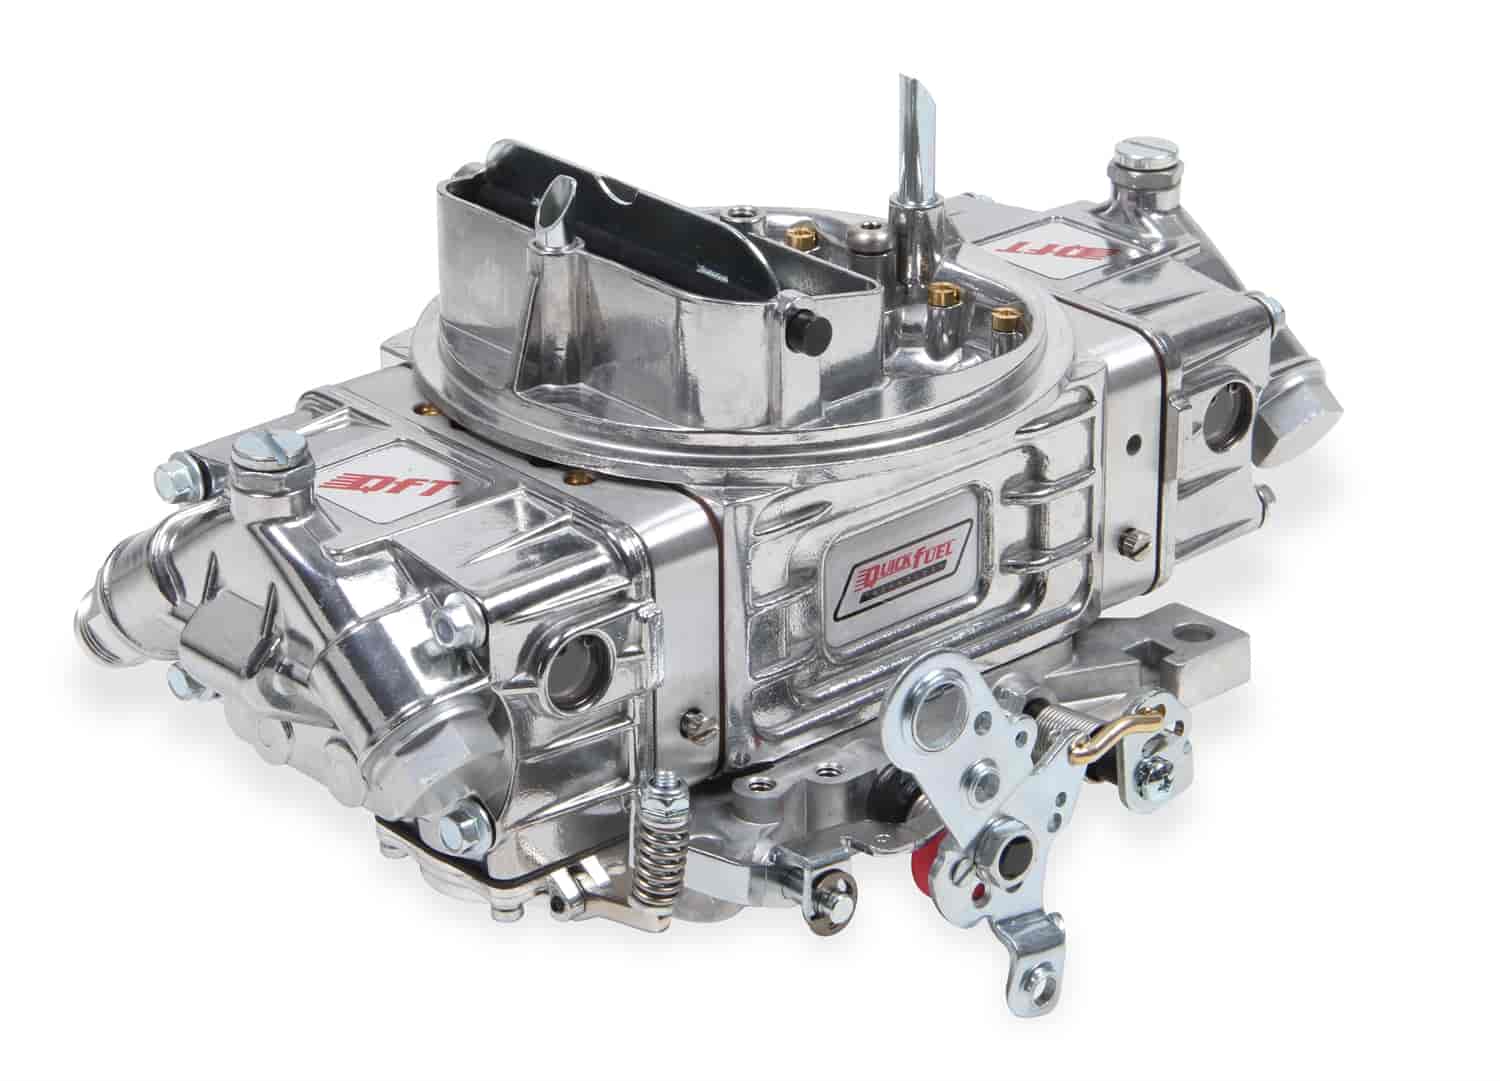 850 CFM 4-bbl SSR Carburetor For Manual Trans or Auto w/ Transbrake at Sea-Level Vacuum Secondary